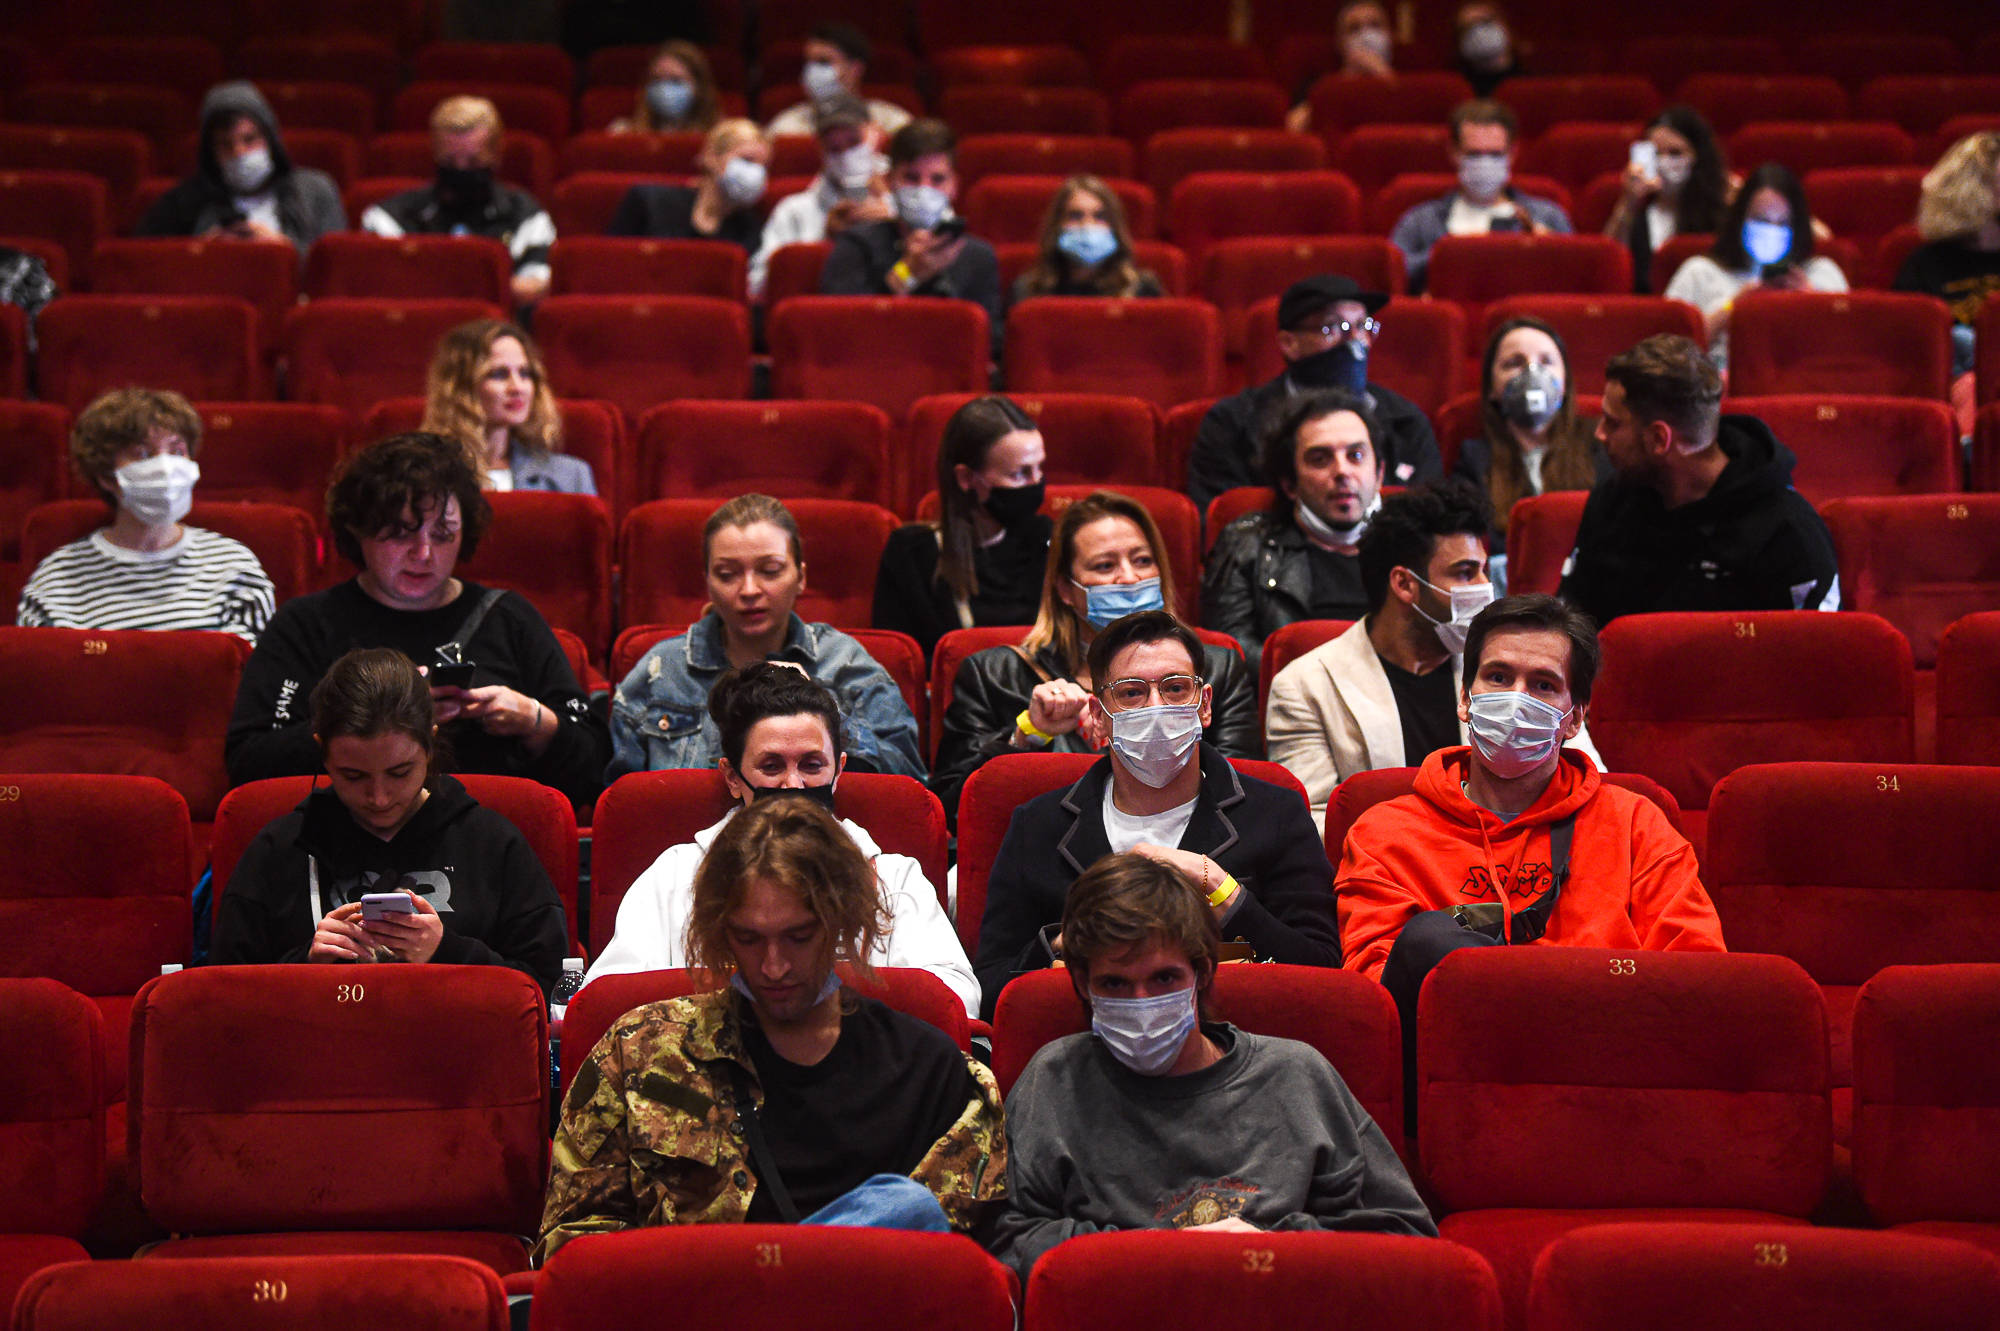 7月31日,戴口罩的观众进入俄罗斯首都莫斯科一家电影院的放映厅.